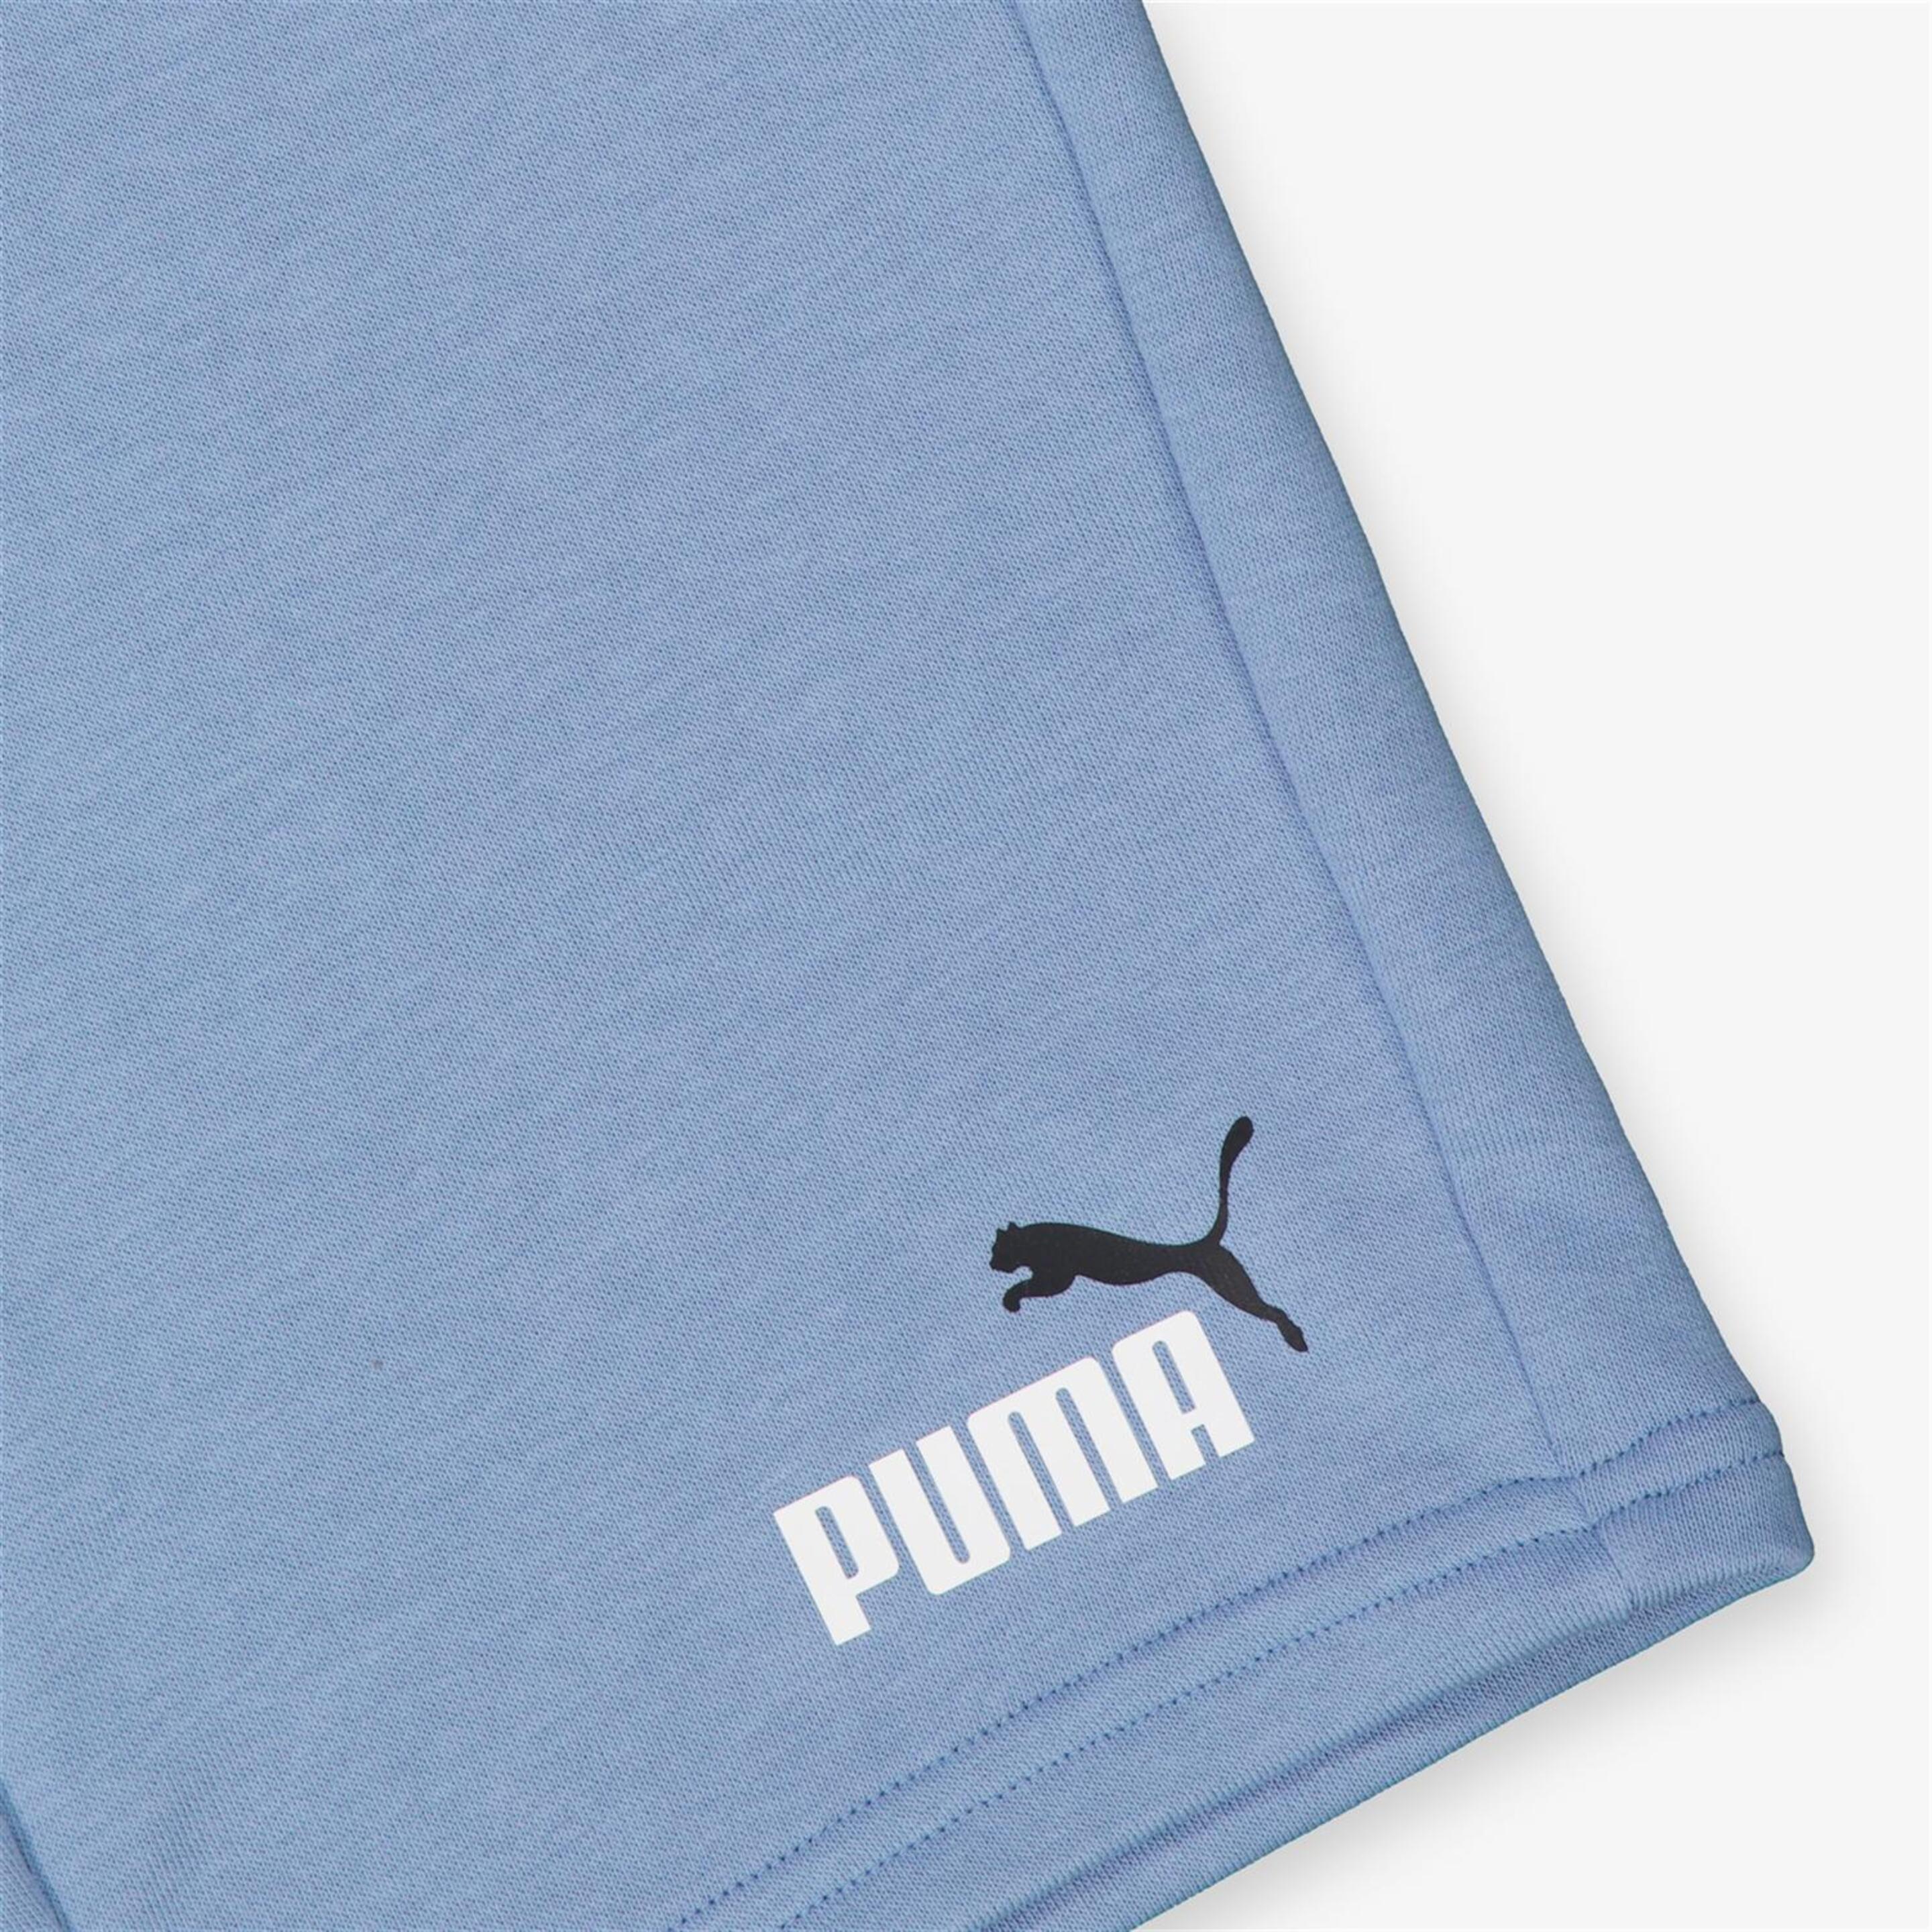 Pantalón Puma - Azul - Pantalón Corto Niño